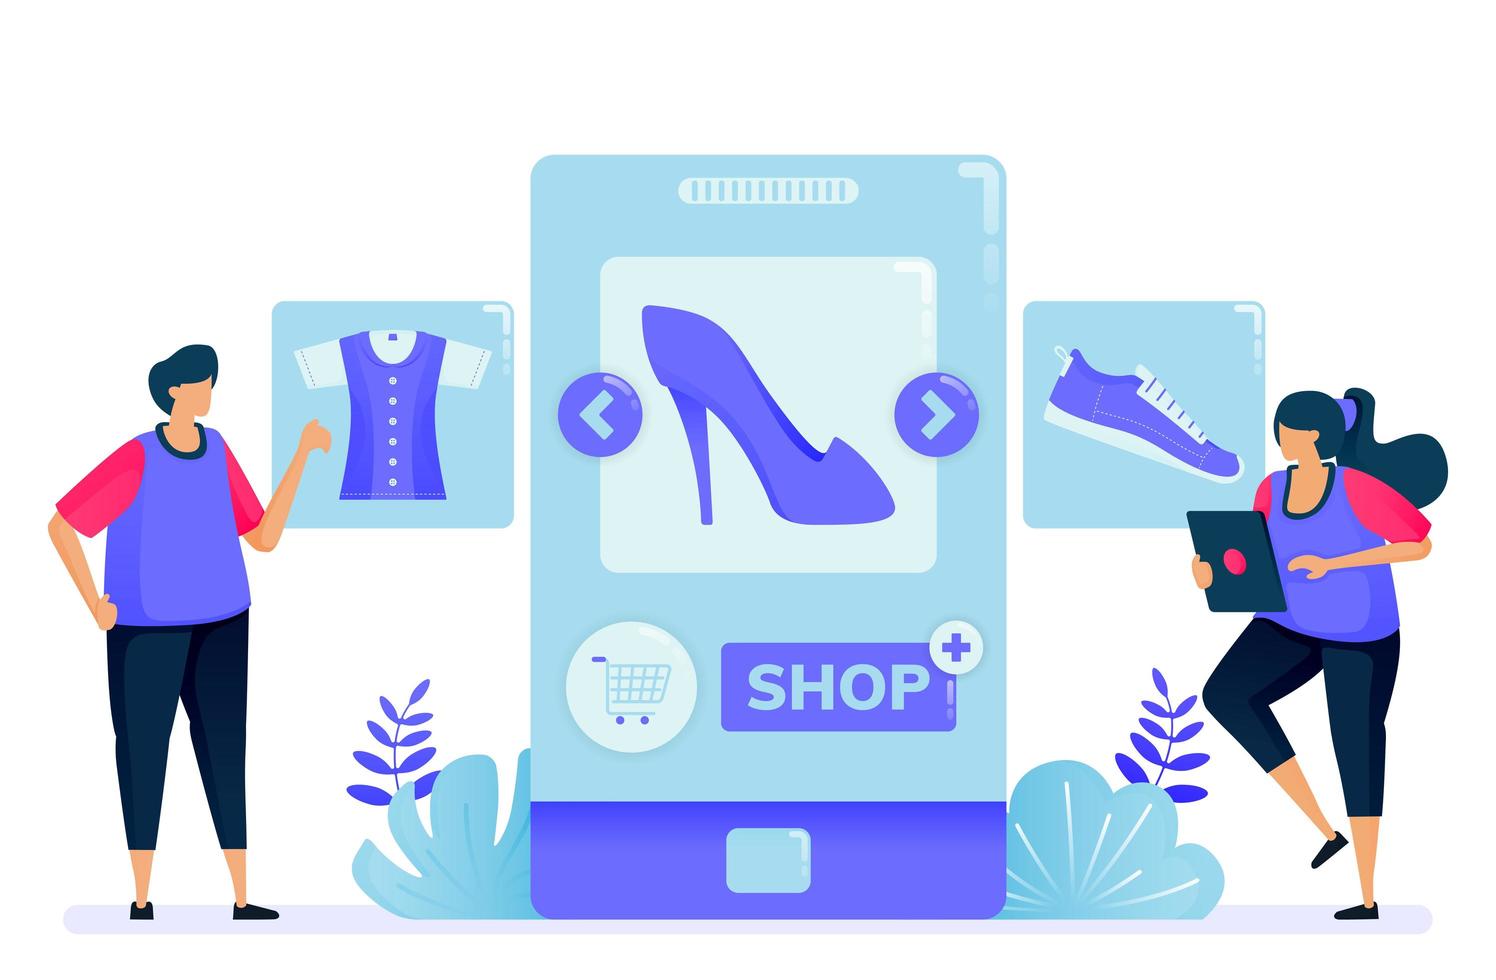 Vektorillustration zum Einkaufen mit mobilen Apps für Modeprodukte. Eröffne einen Shop und werde Verkäufer mit Apps. kann für Zielseite, Website, Web, mobile Apps, Poster, Flyer verwendet werden vektor